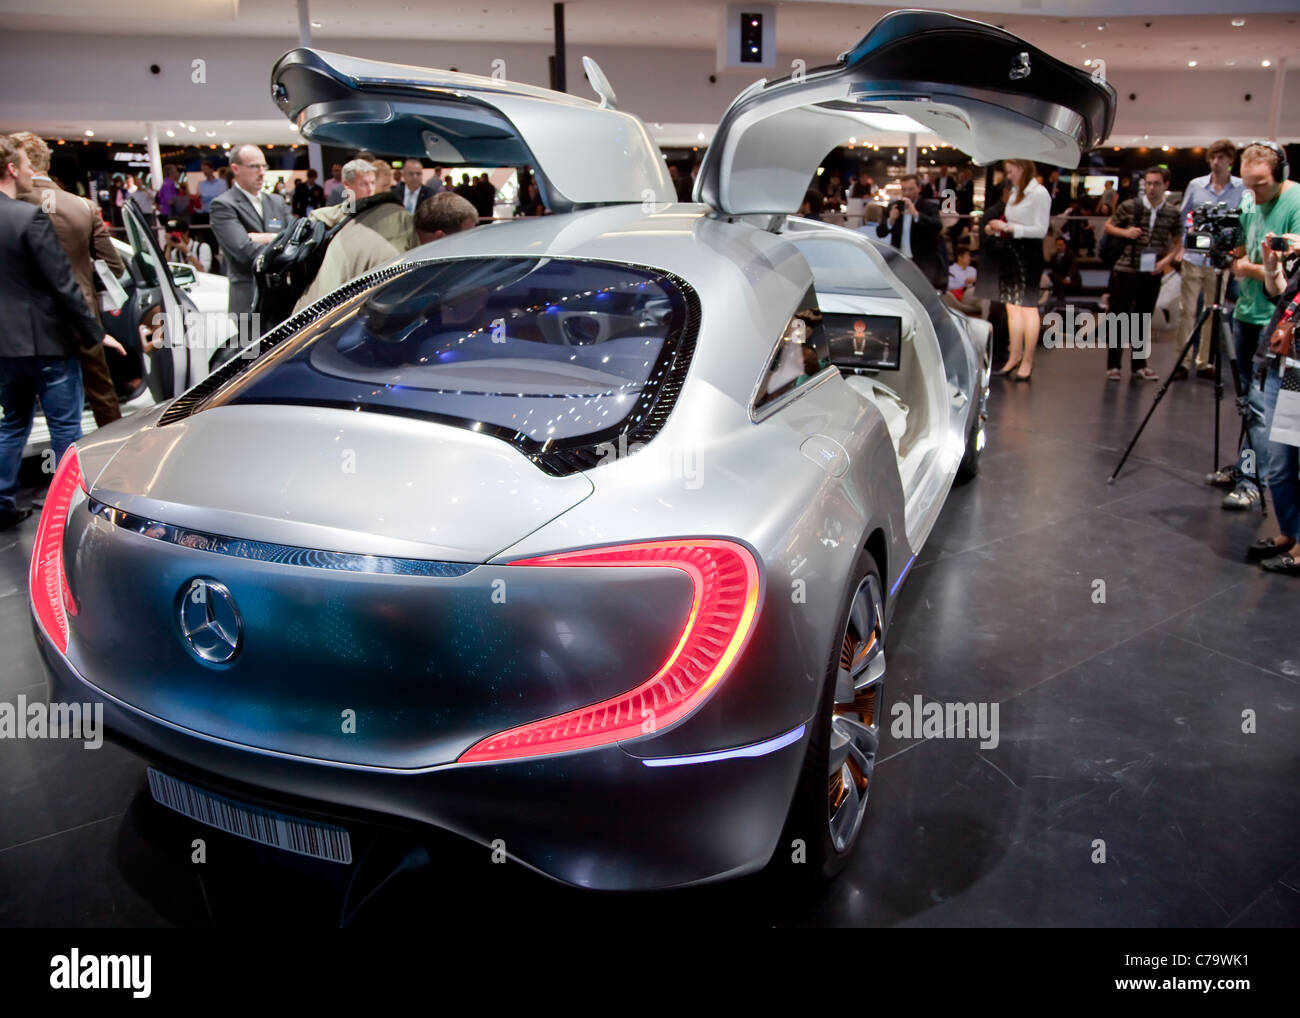 Nouveau Concept Car Mercedes Benz F125 sur l'IAA 2011 International Motor Show de Francfort, Allemagne Banque D'Images